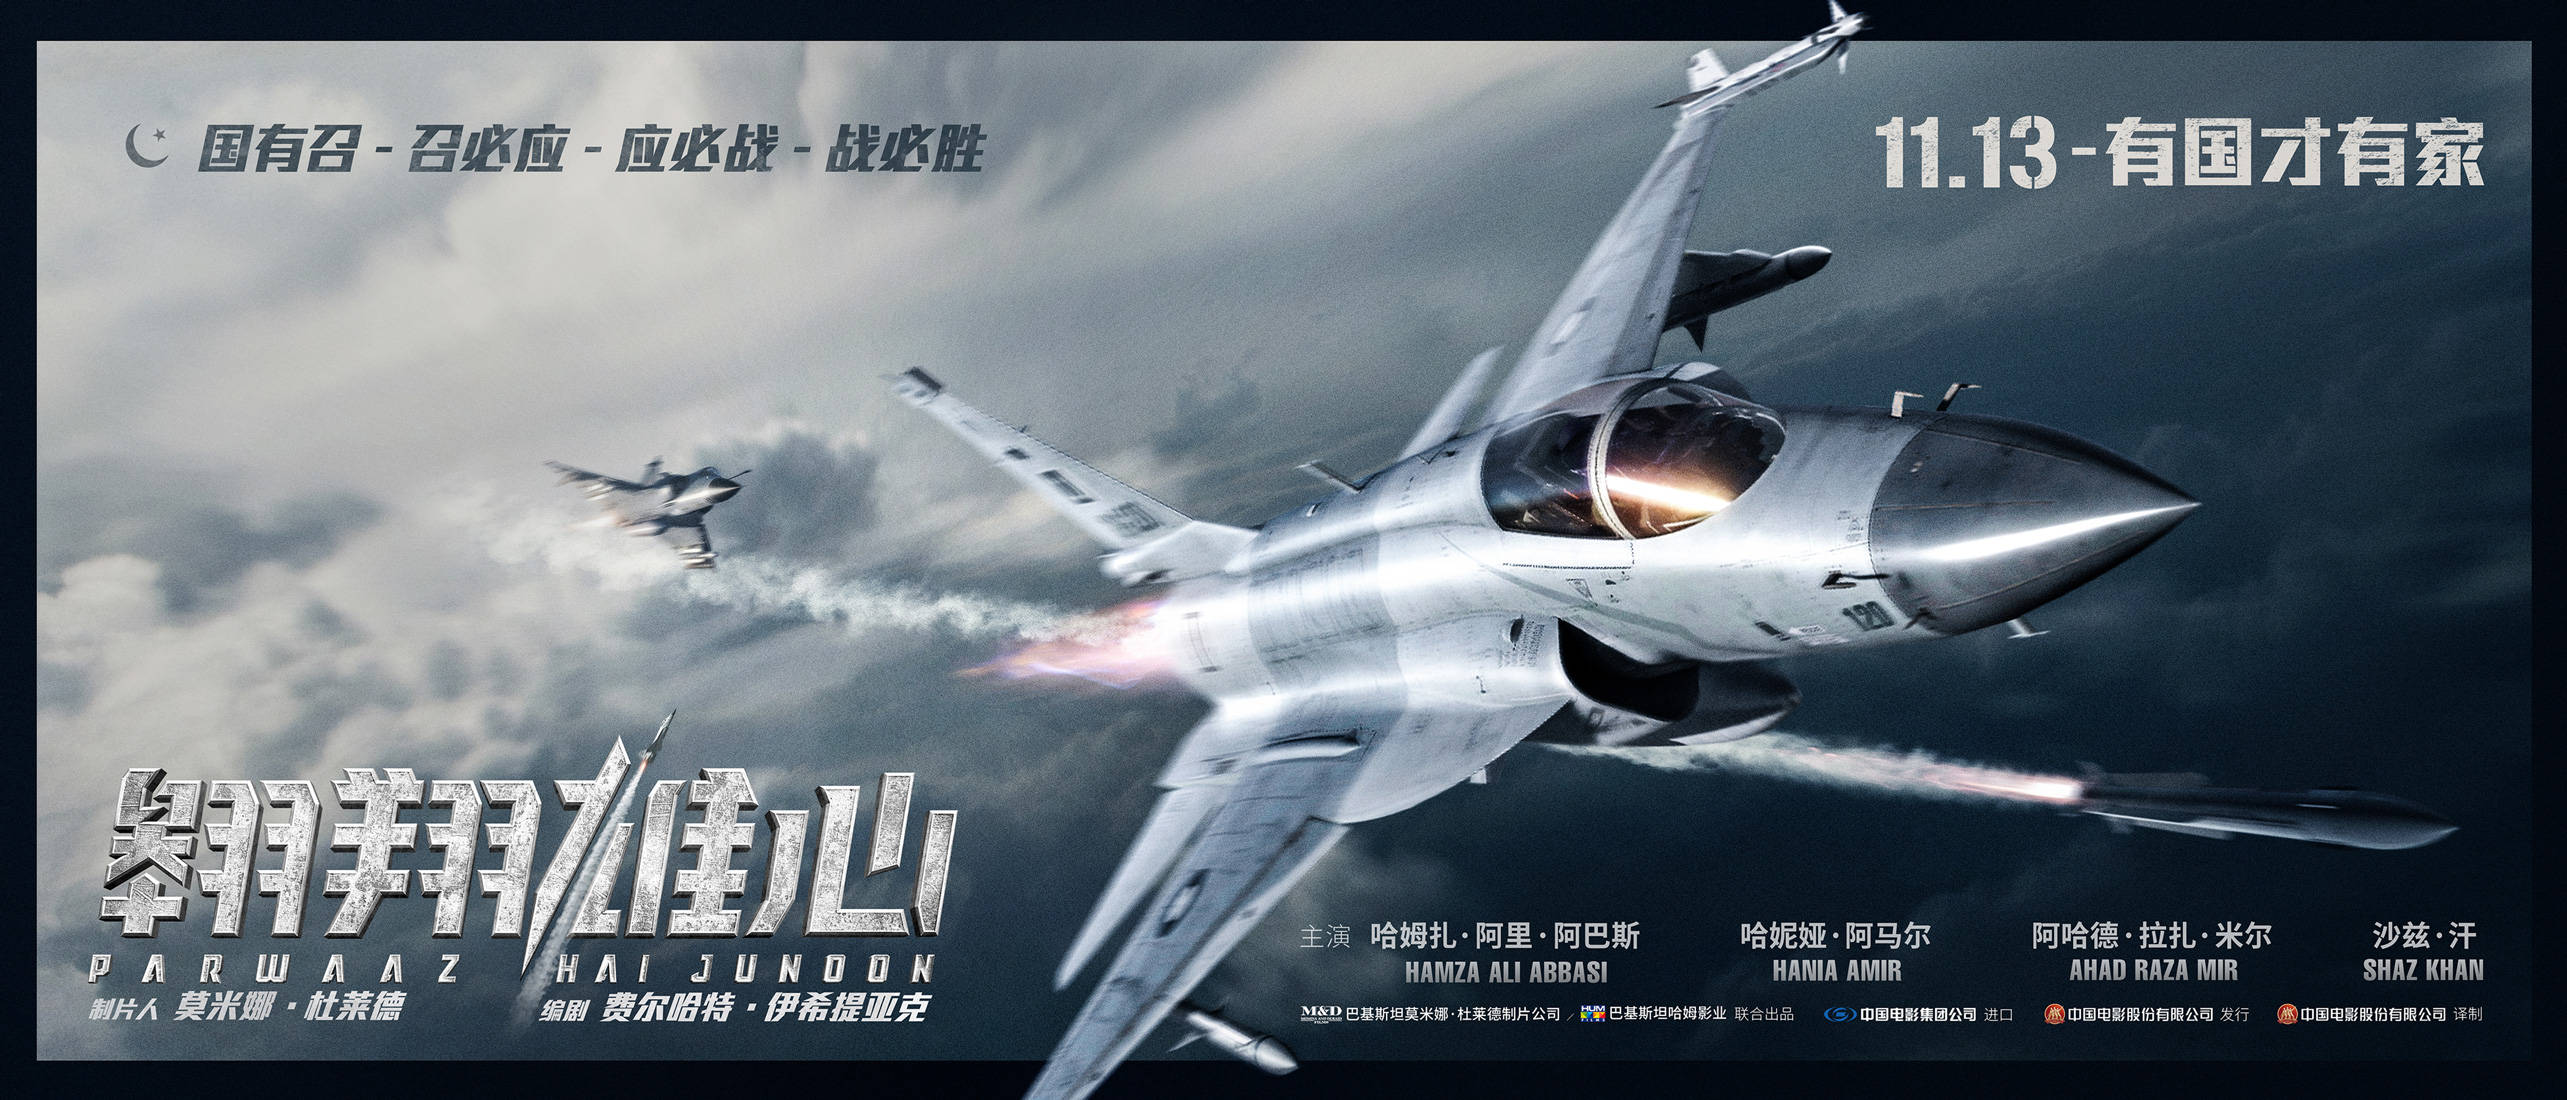 电影《翱翔雄心》发布"誓死守卫"版海报 11.13直击枭龙战机霸气迎战